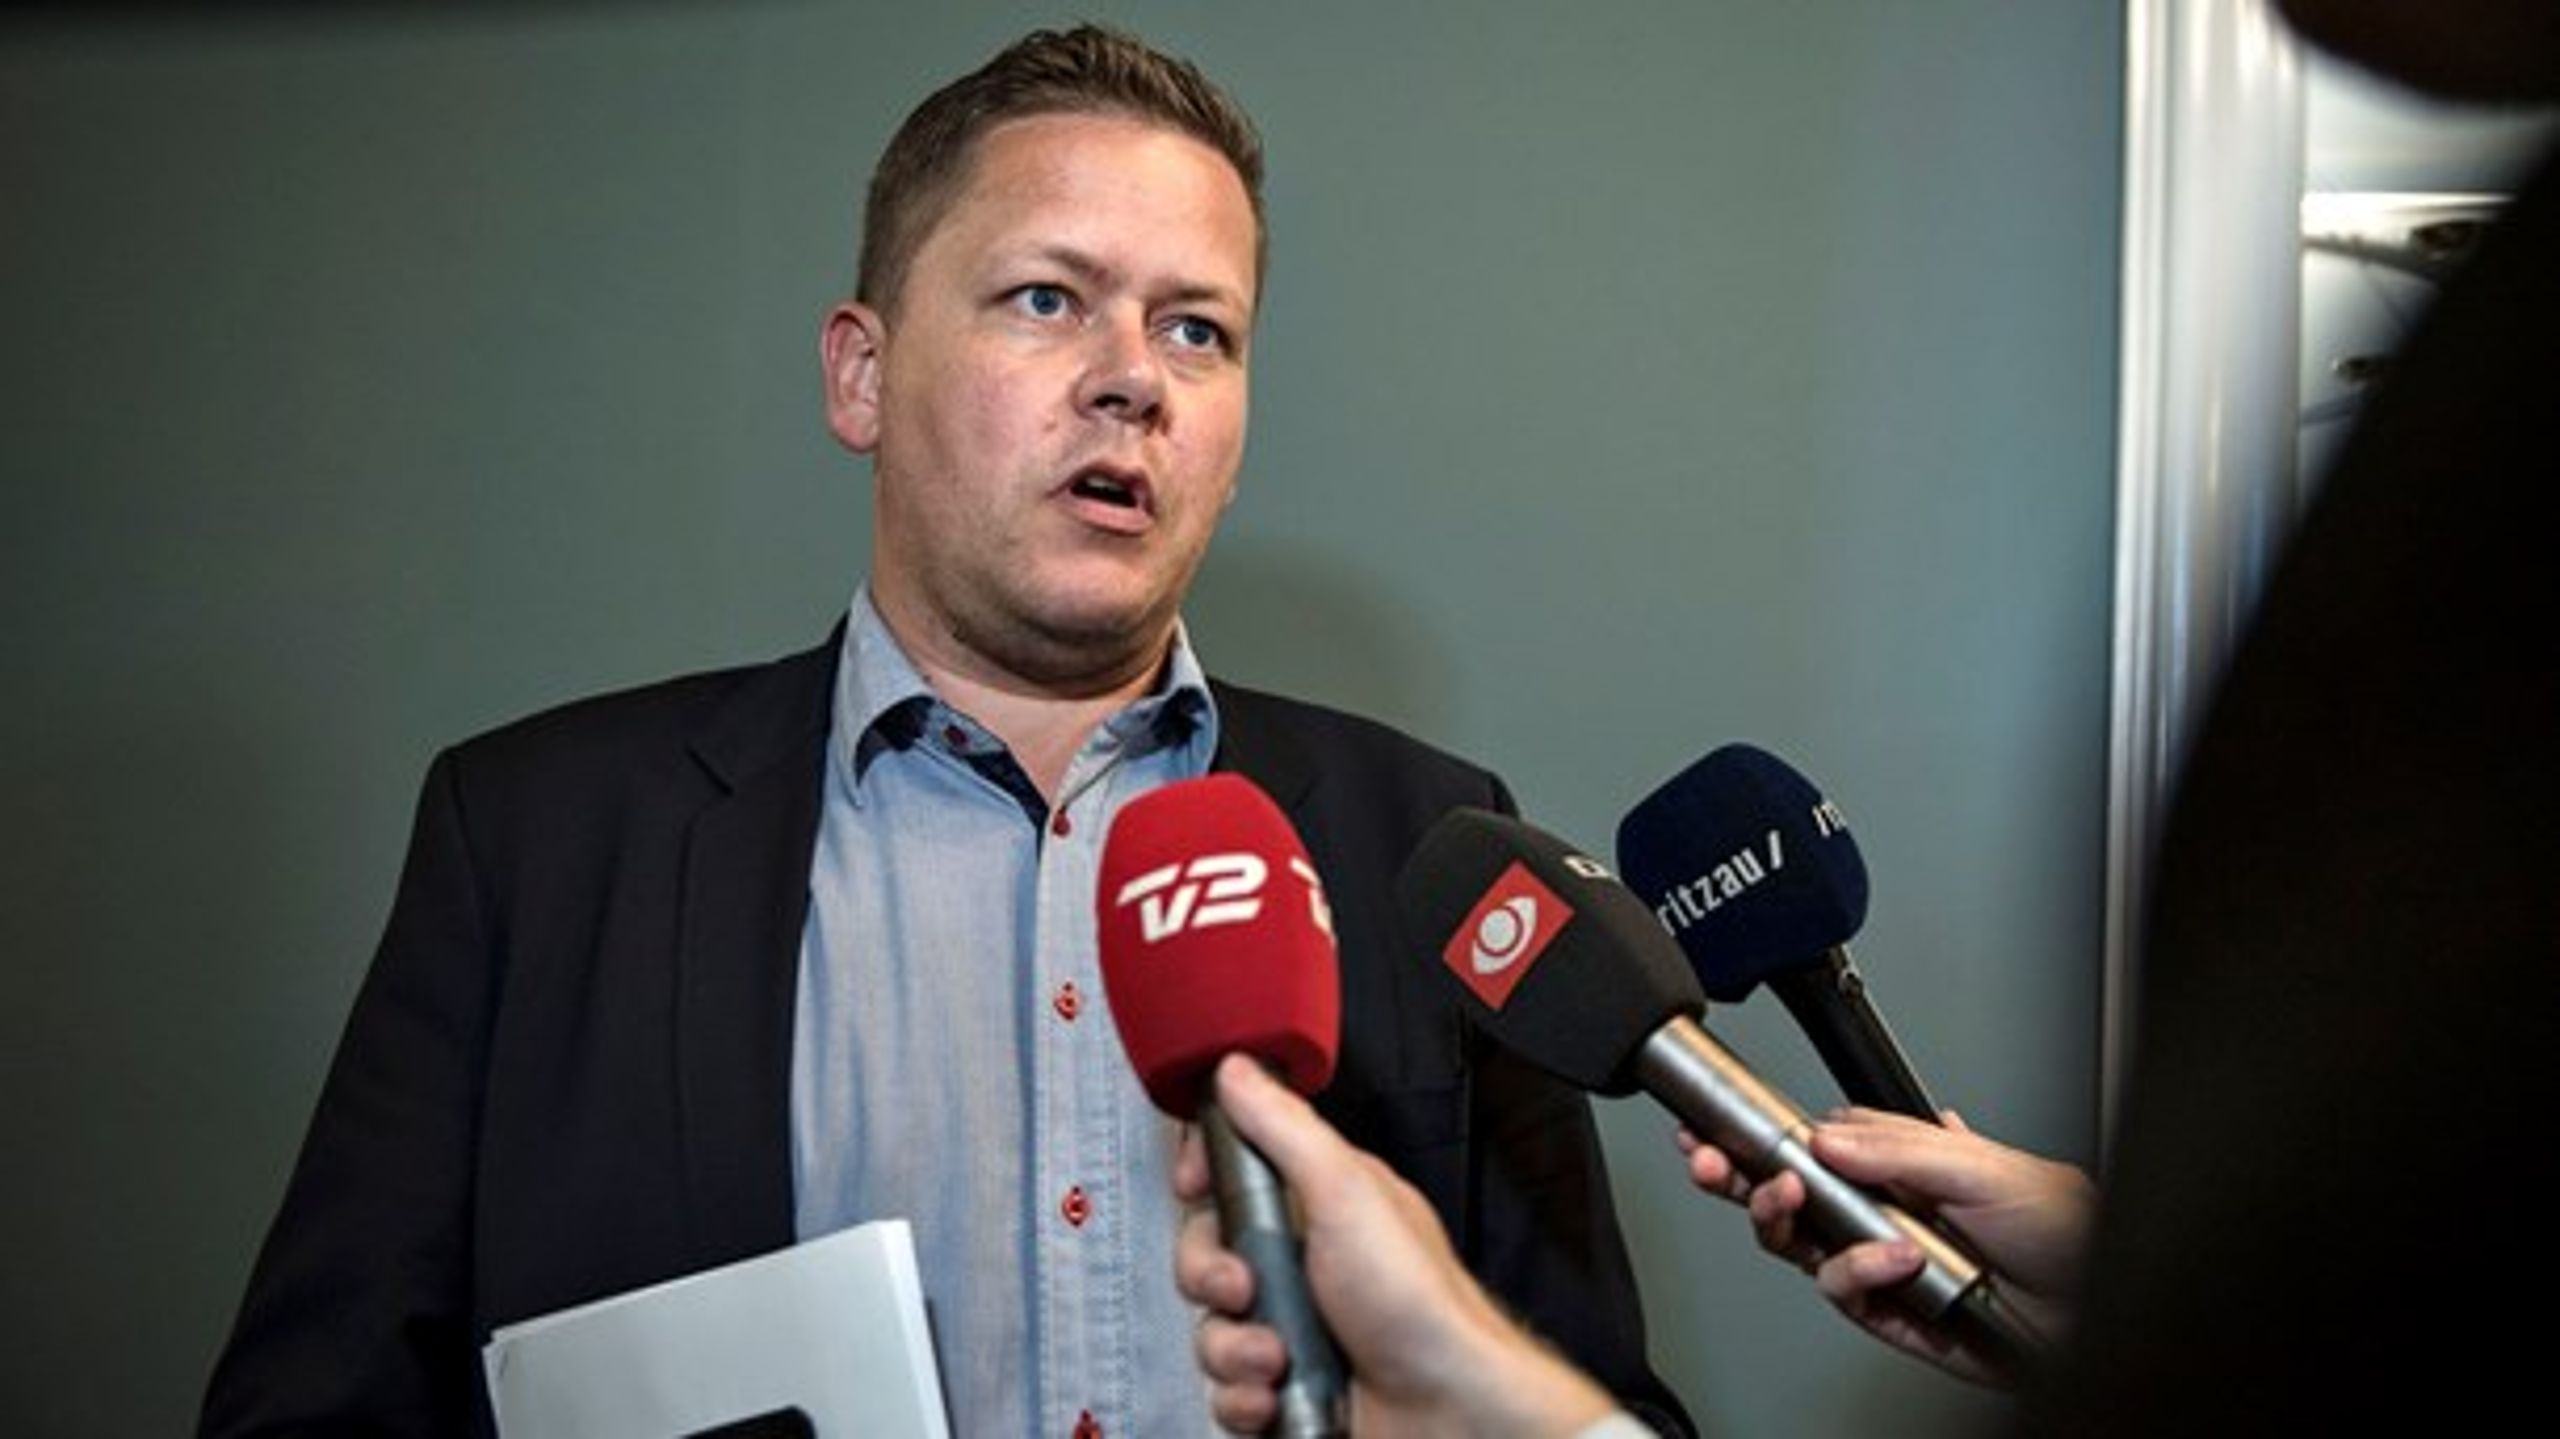 Dennis Flydtkjær overtager ordførerskab fra Claus Kvist Hansen, der ikke blev genvalgt.